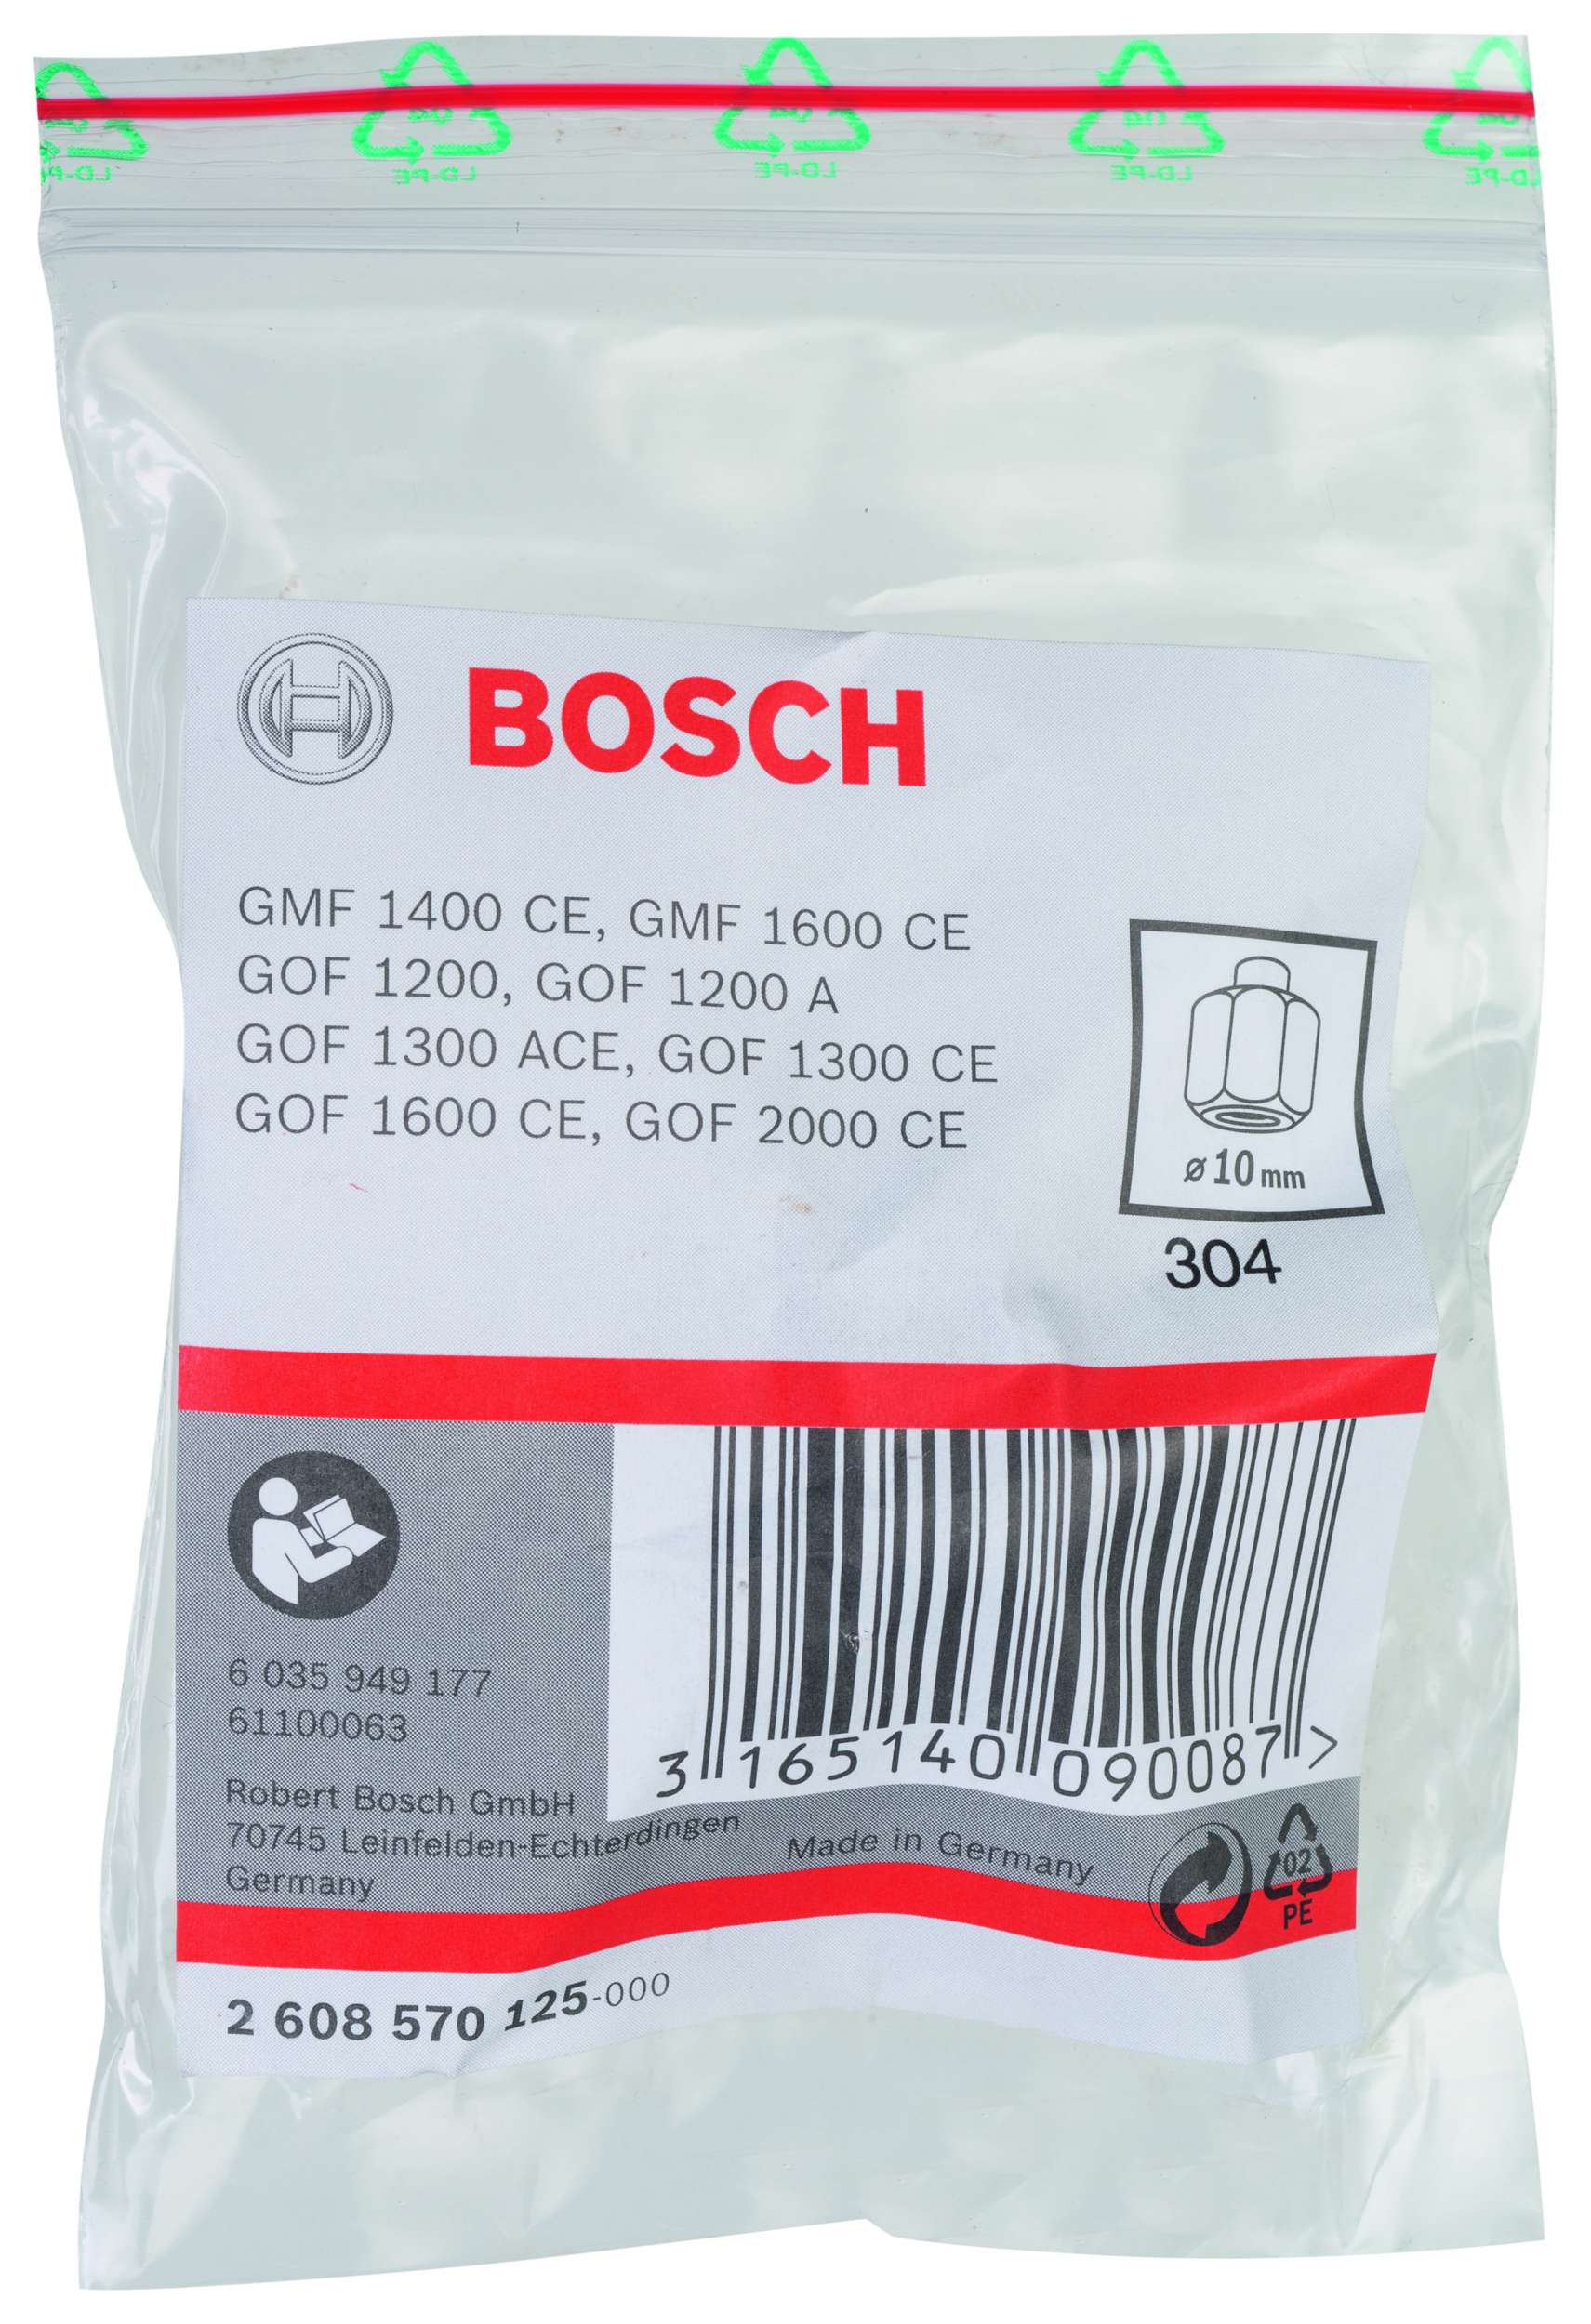 Bosch - 10 mm cap 24 mm Anahtar Genisligi Penset